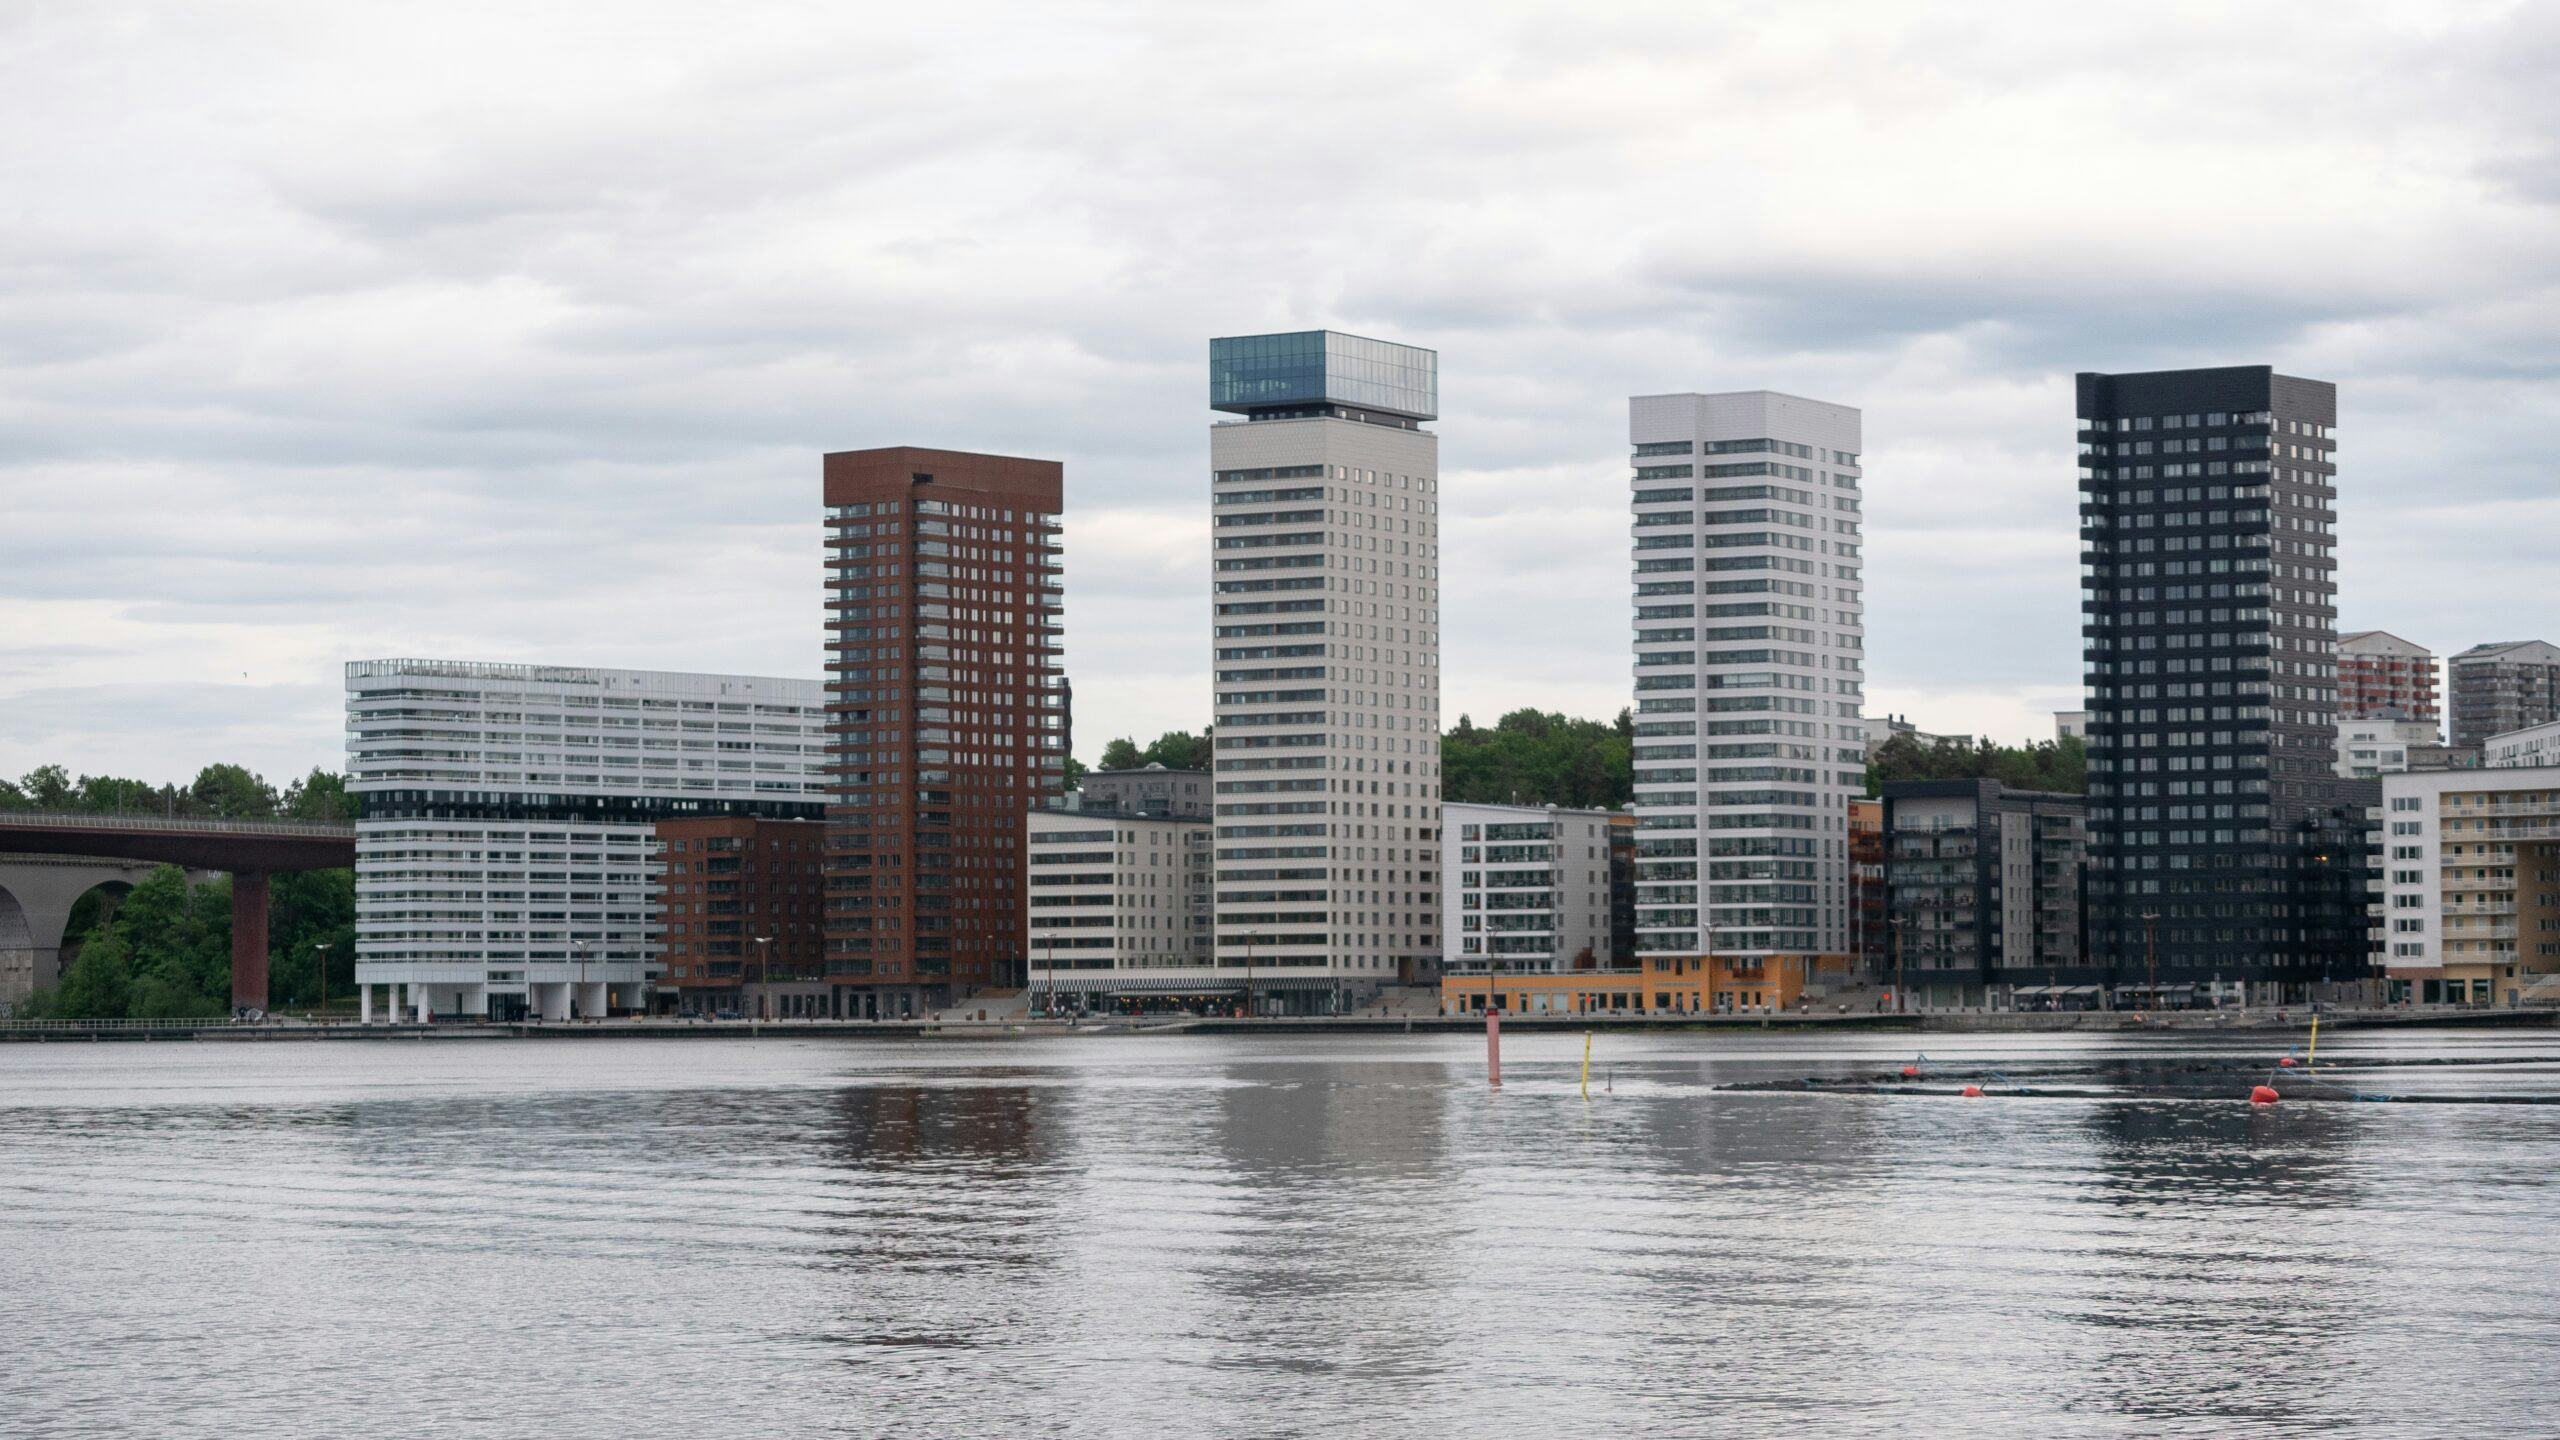 Zweeds vastgoedfonds SBB dieper in problemen na kredietverlaging